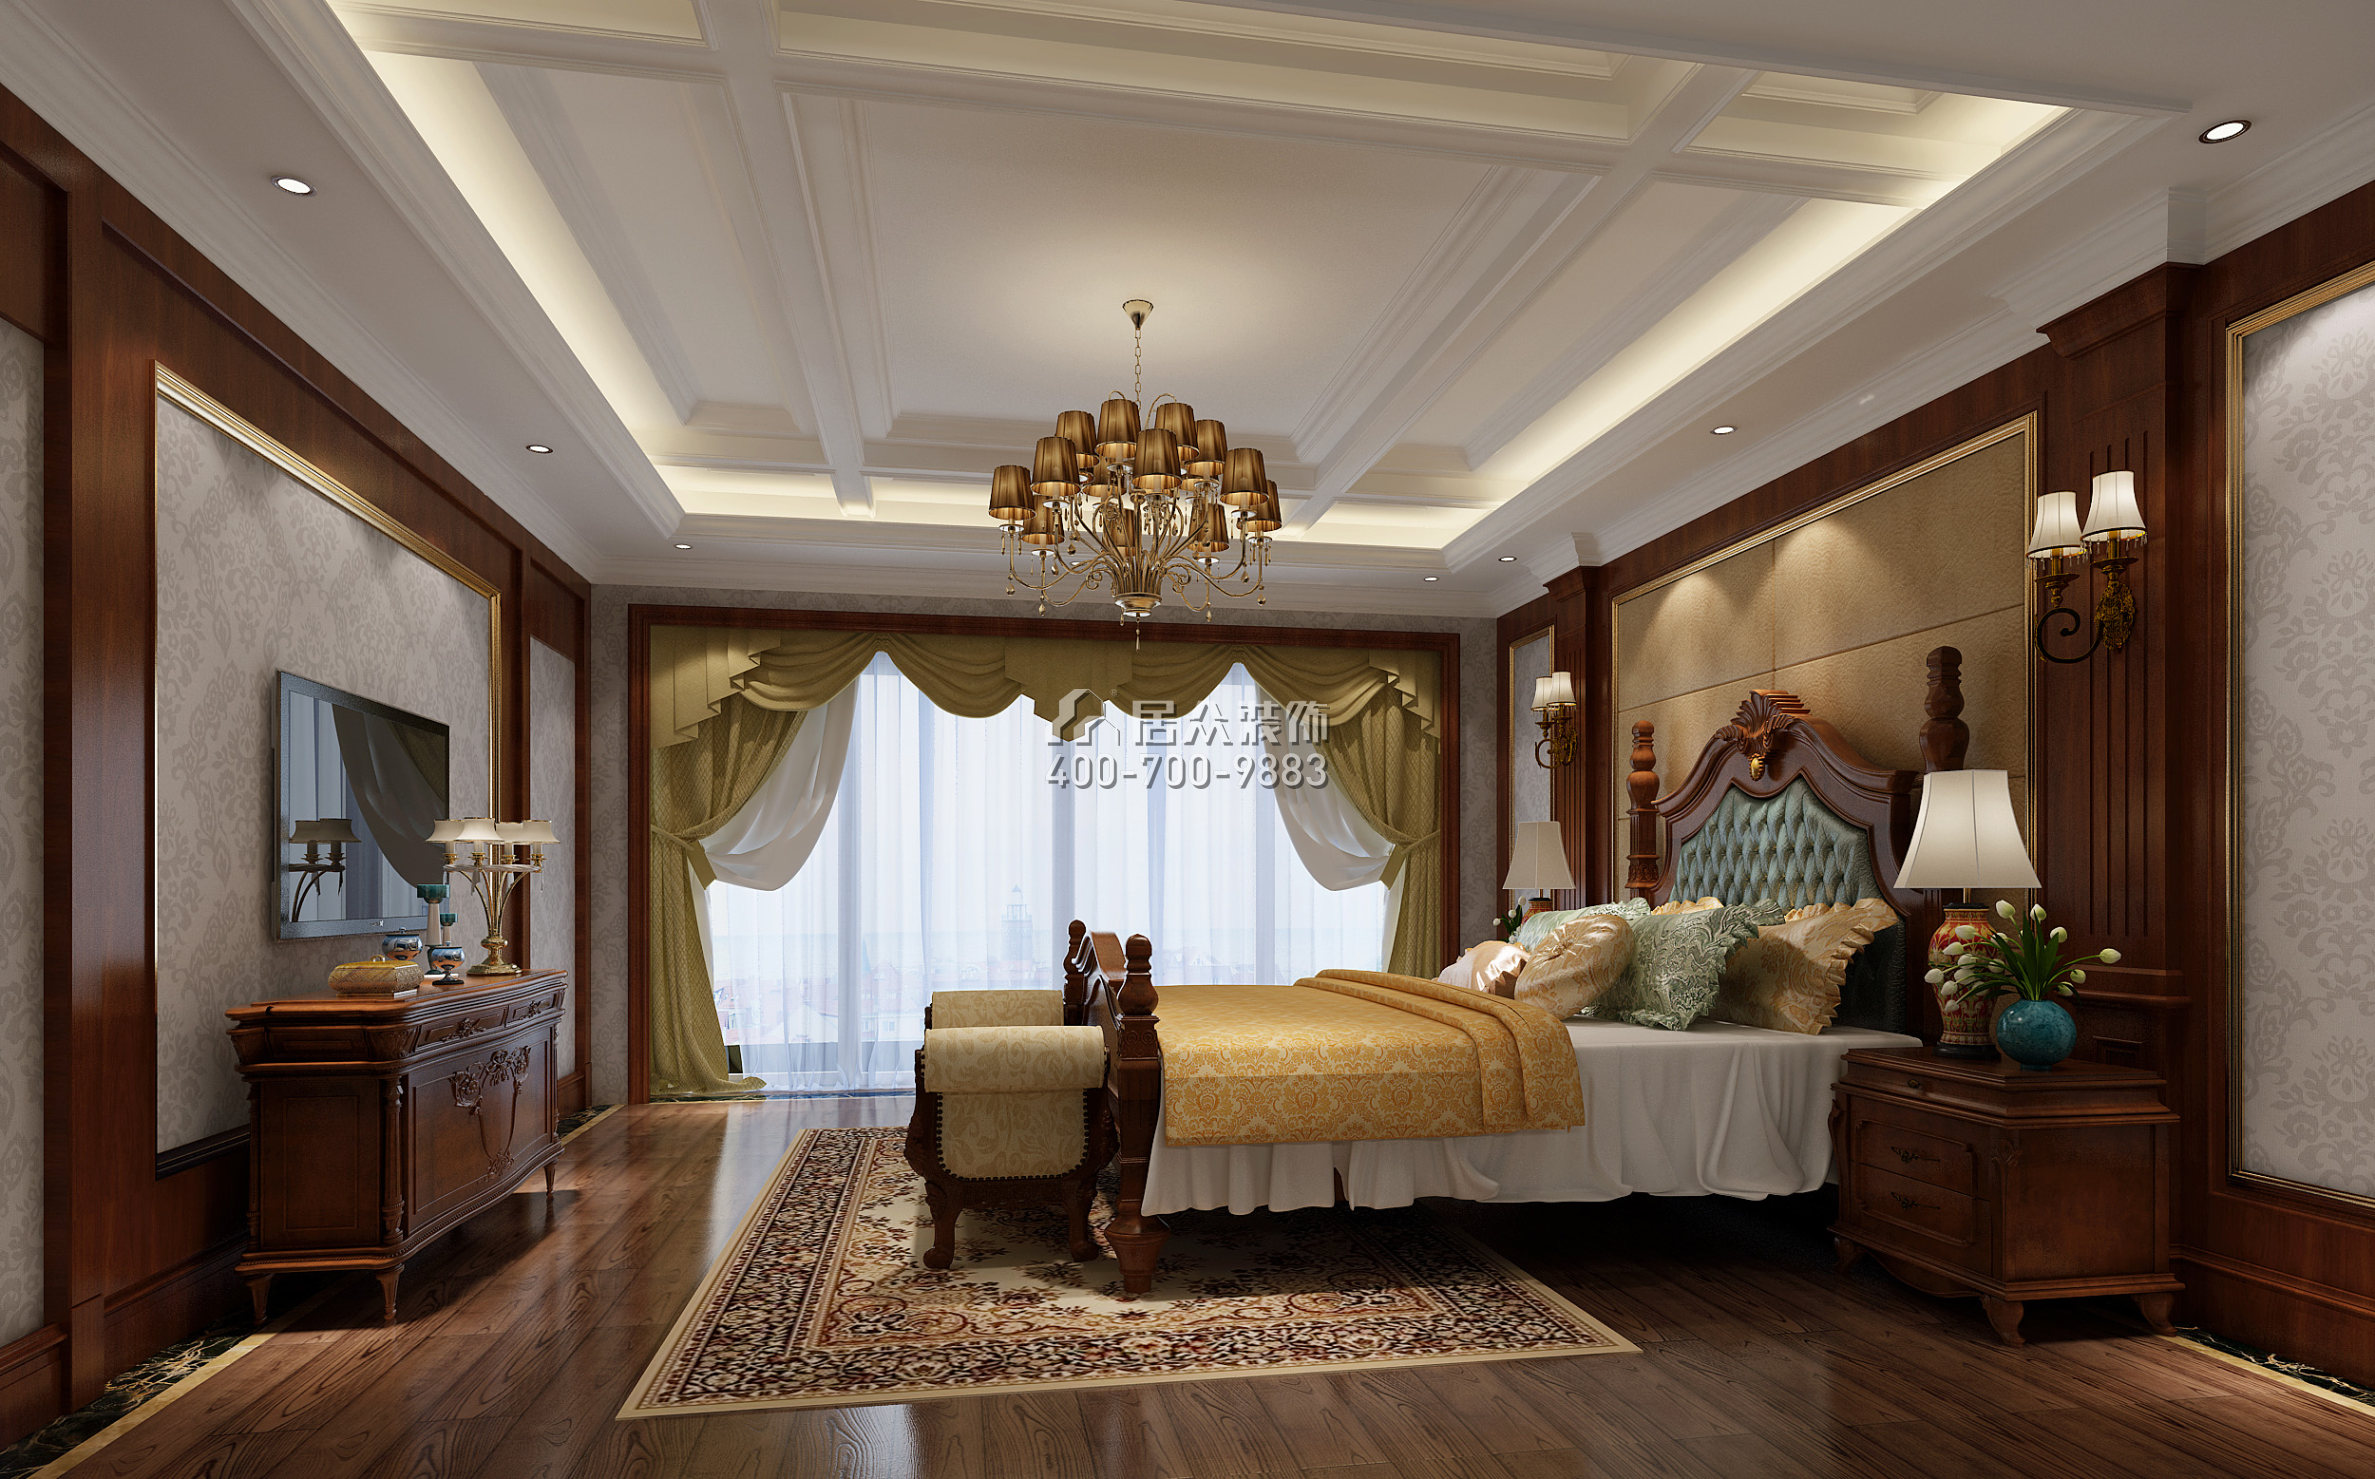 純水岸十五期300平方米美式風格平層戶型臥室裝修效果圖